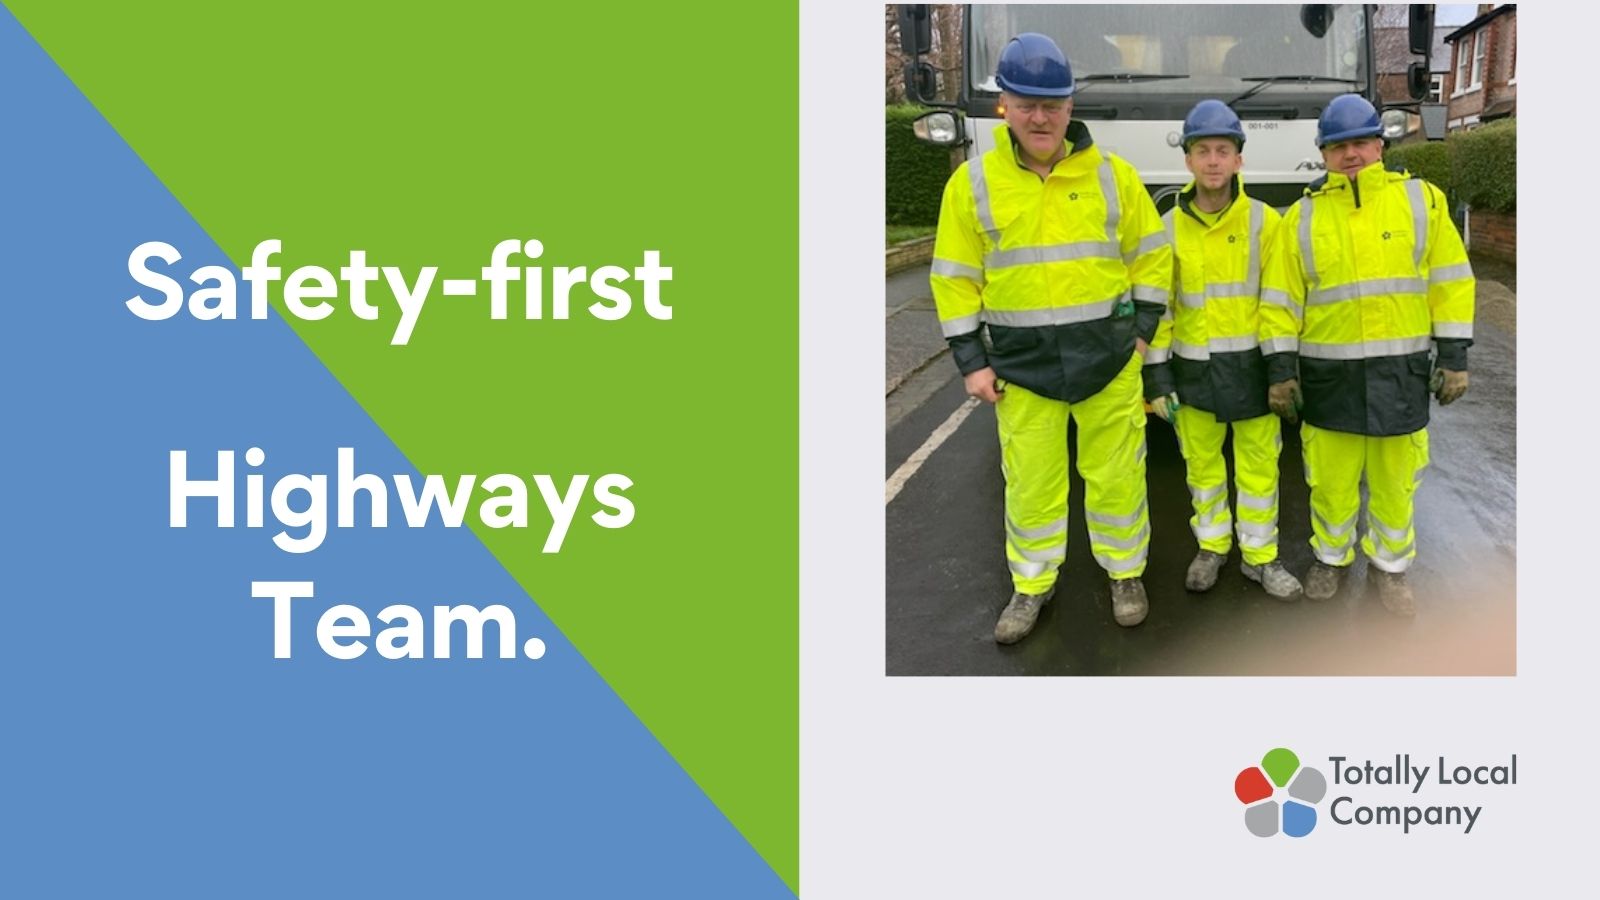 Highways team – Safety first